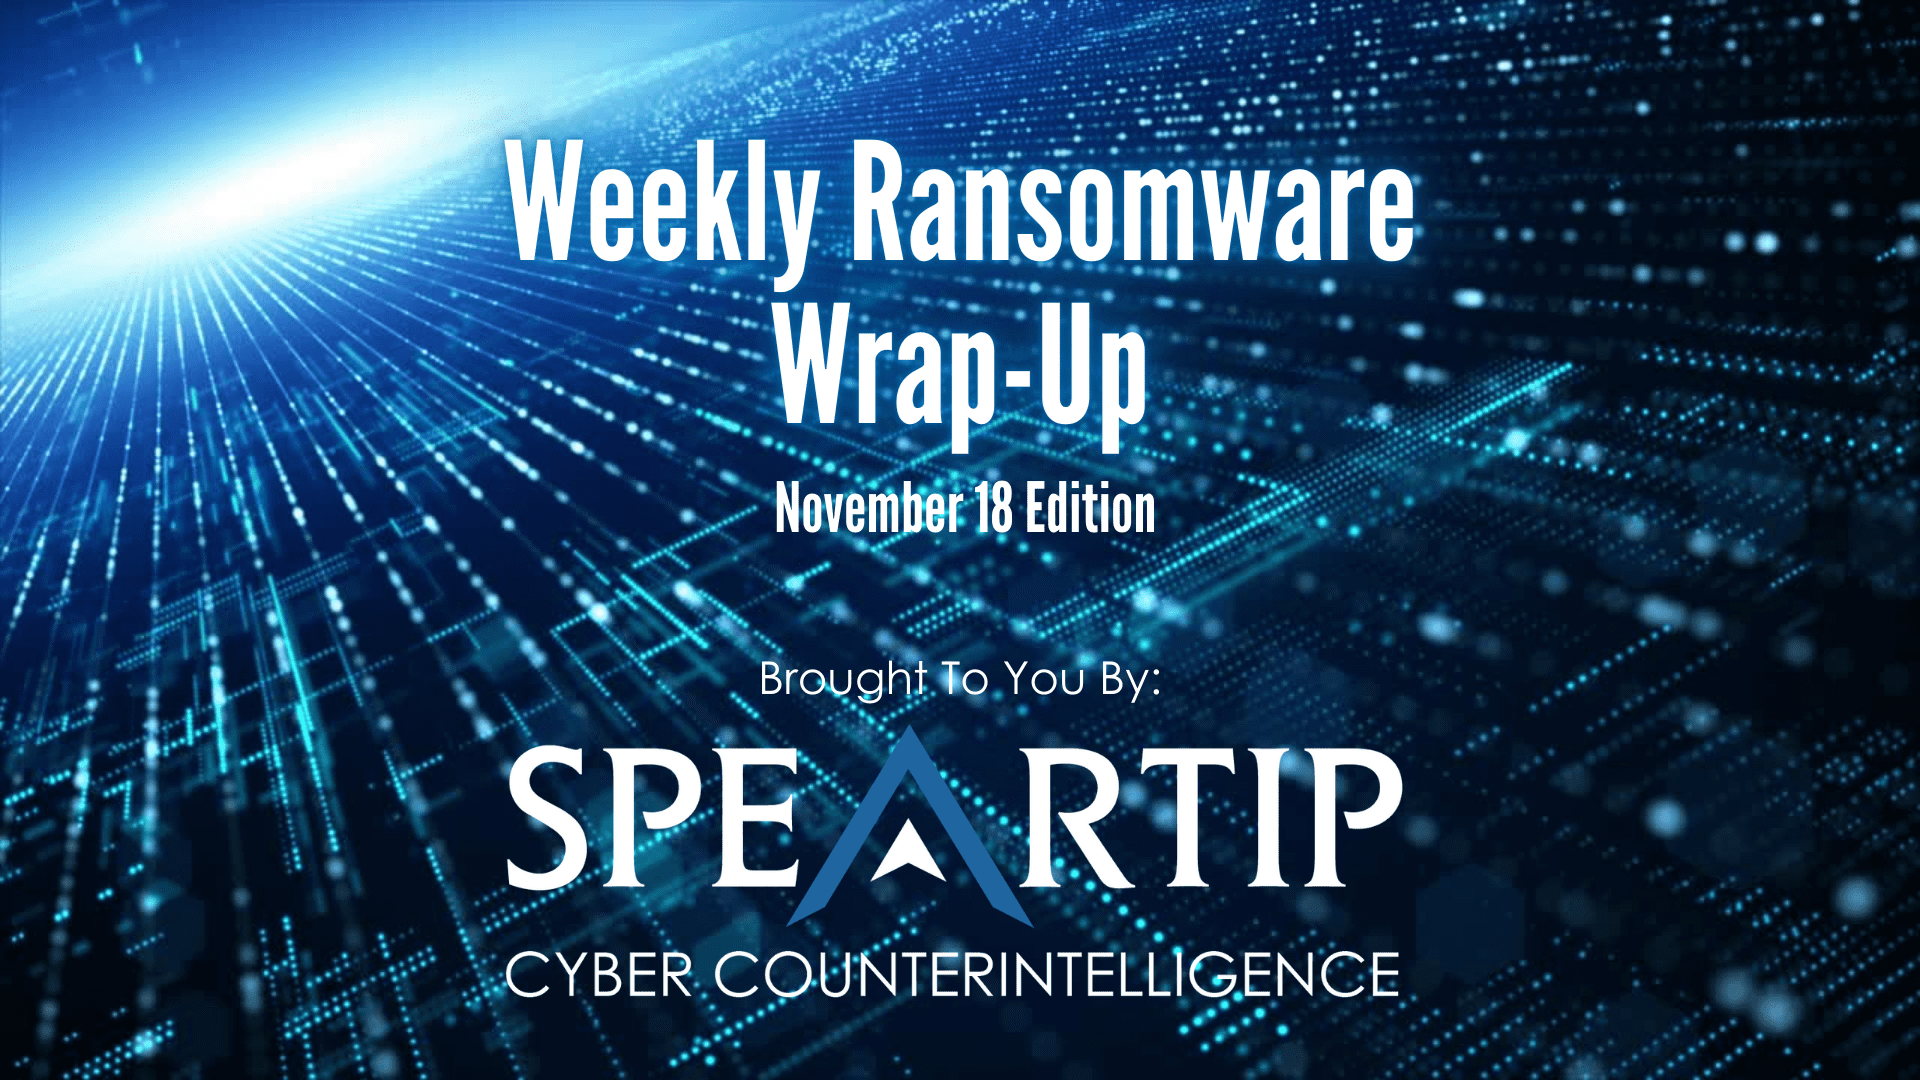 November 18, 2022 Ransomware Wrap-Up